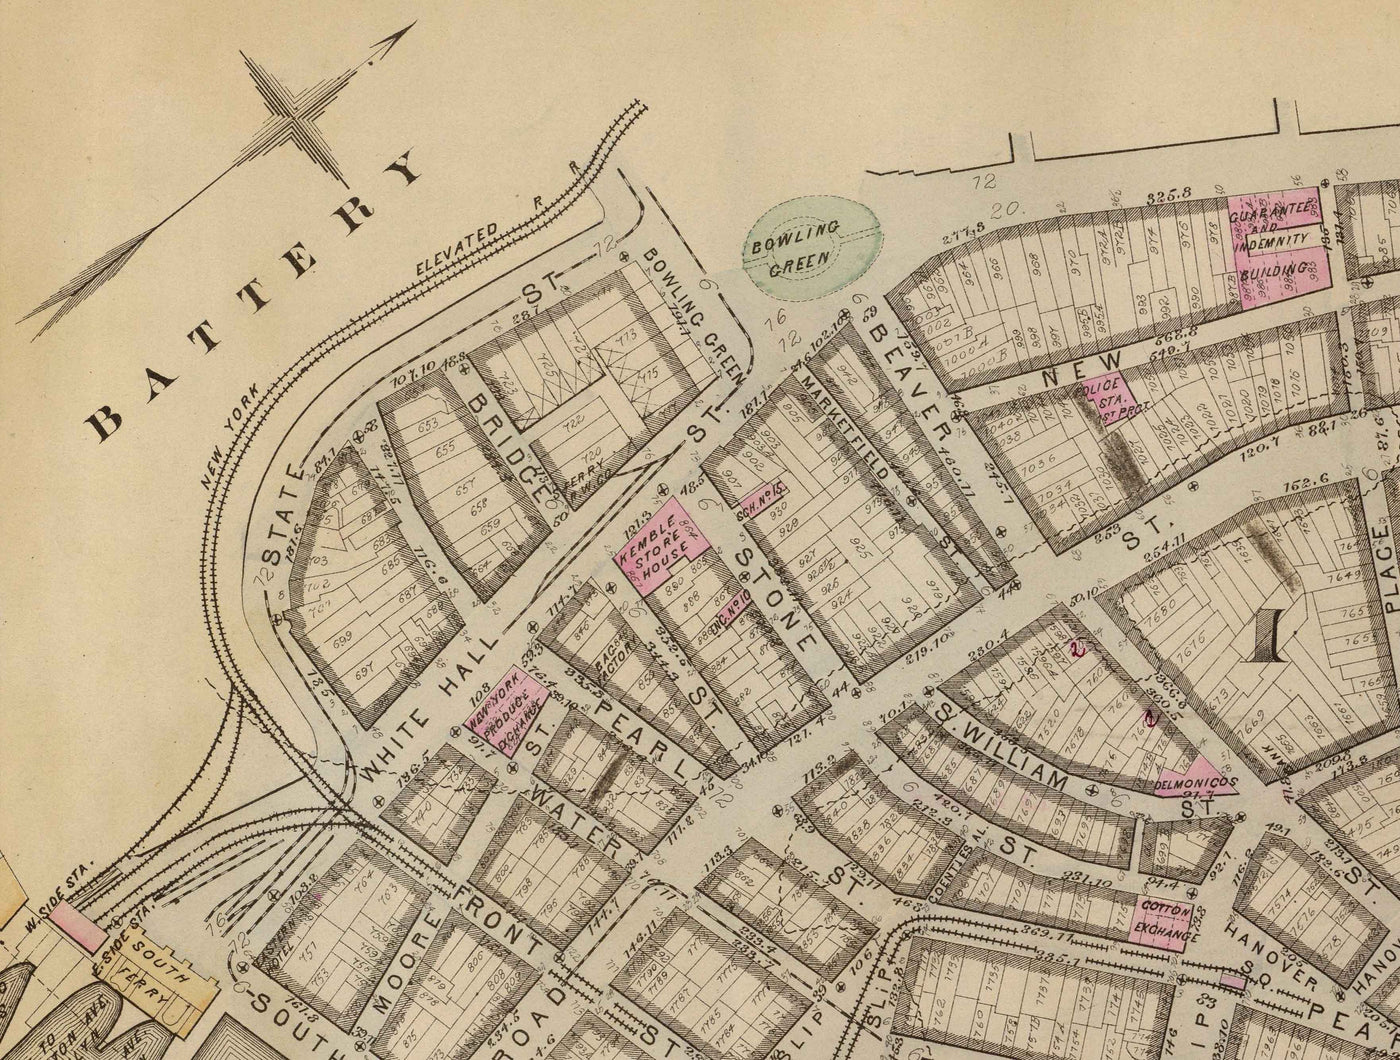 Antiguo mapa del distrito financiero y del centro cívico, 1879 - barrios de Manhattan, Wall St, Fulton St, East River, Ayuntamiento, Palacio de Justicia, Tesorería